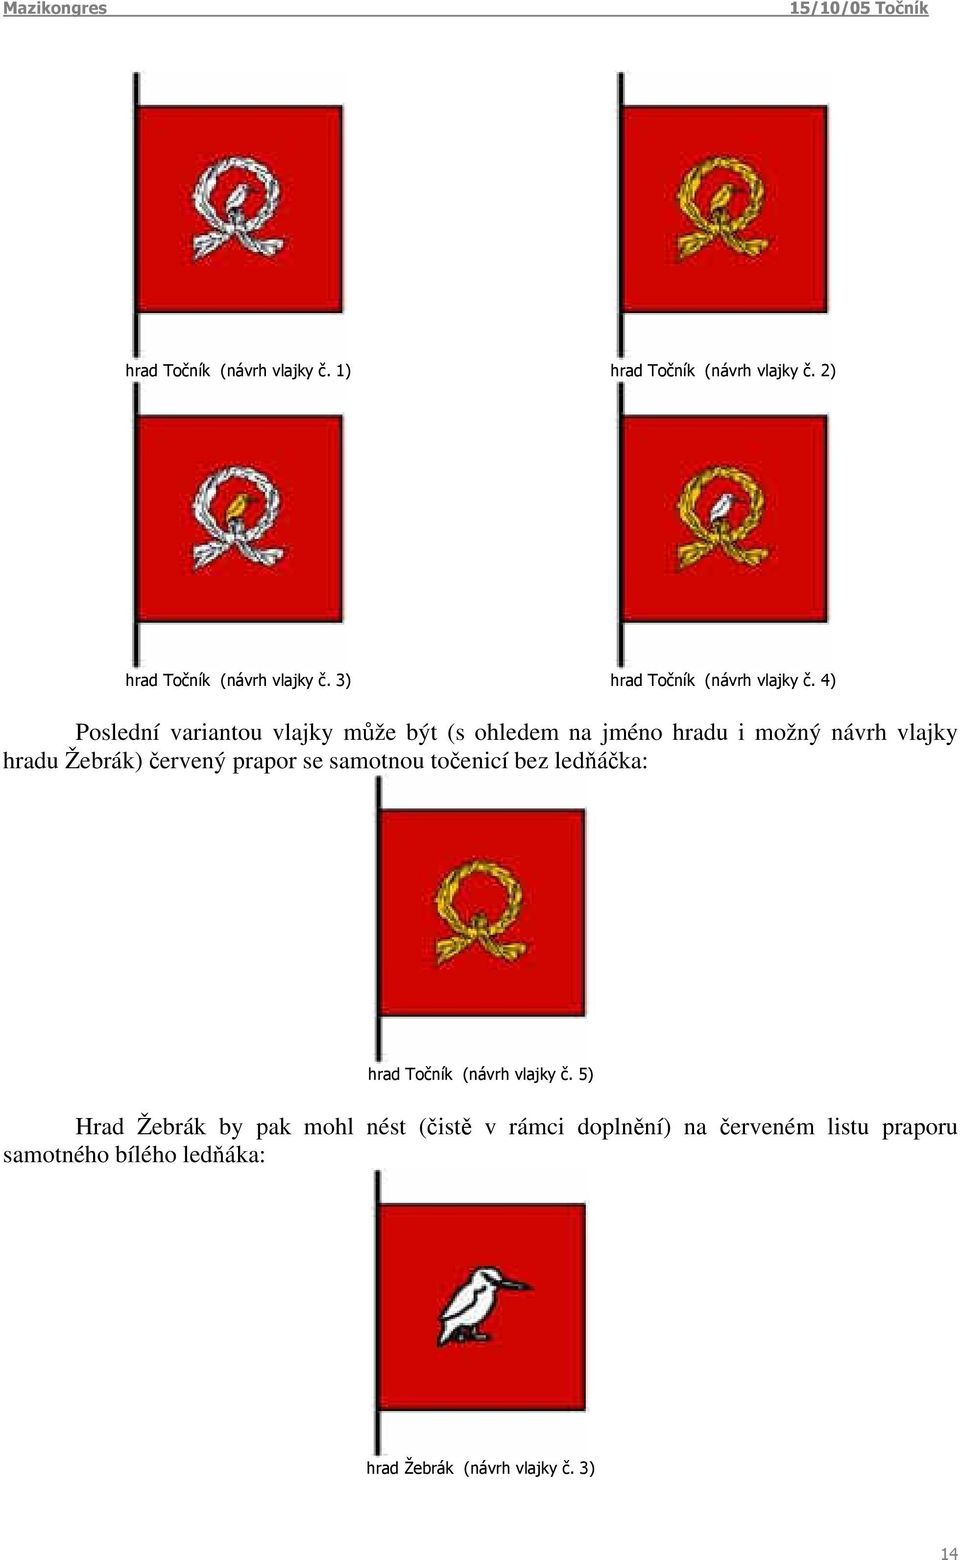 4) Poslední variantou vlajky může být (s ohledem na jméno hradu i možný návrh vlajky hradu Žebrák) červený